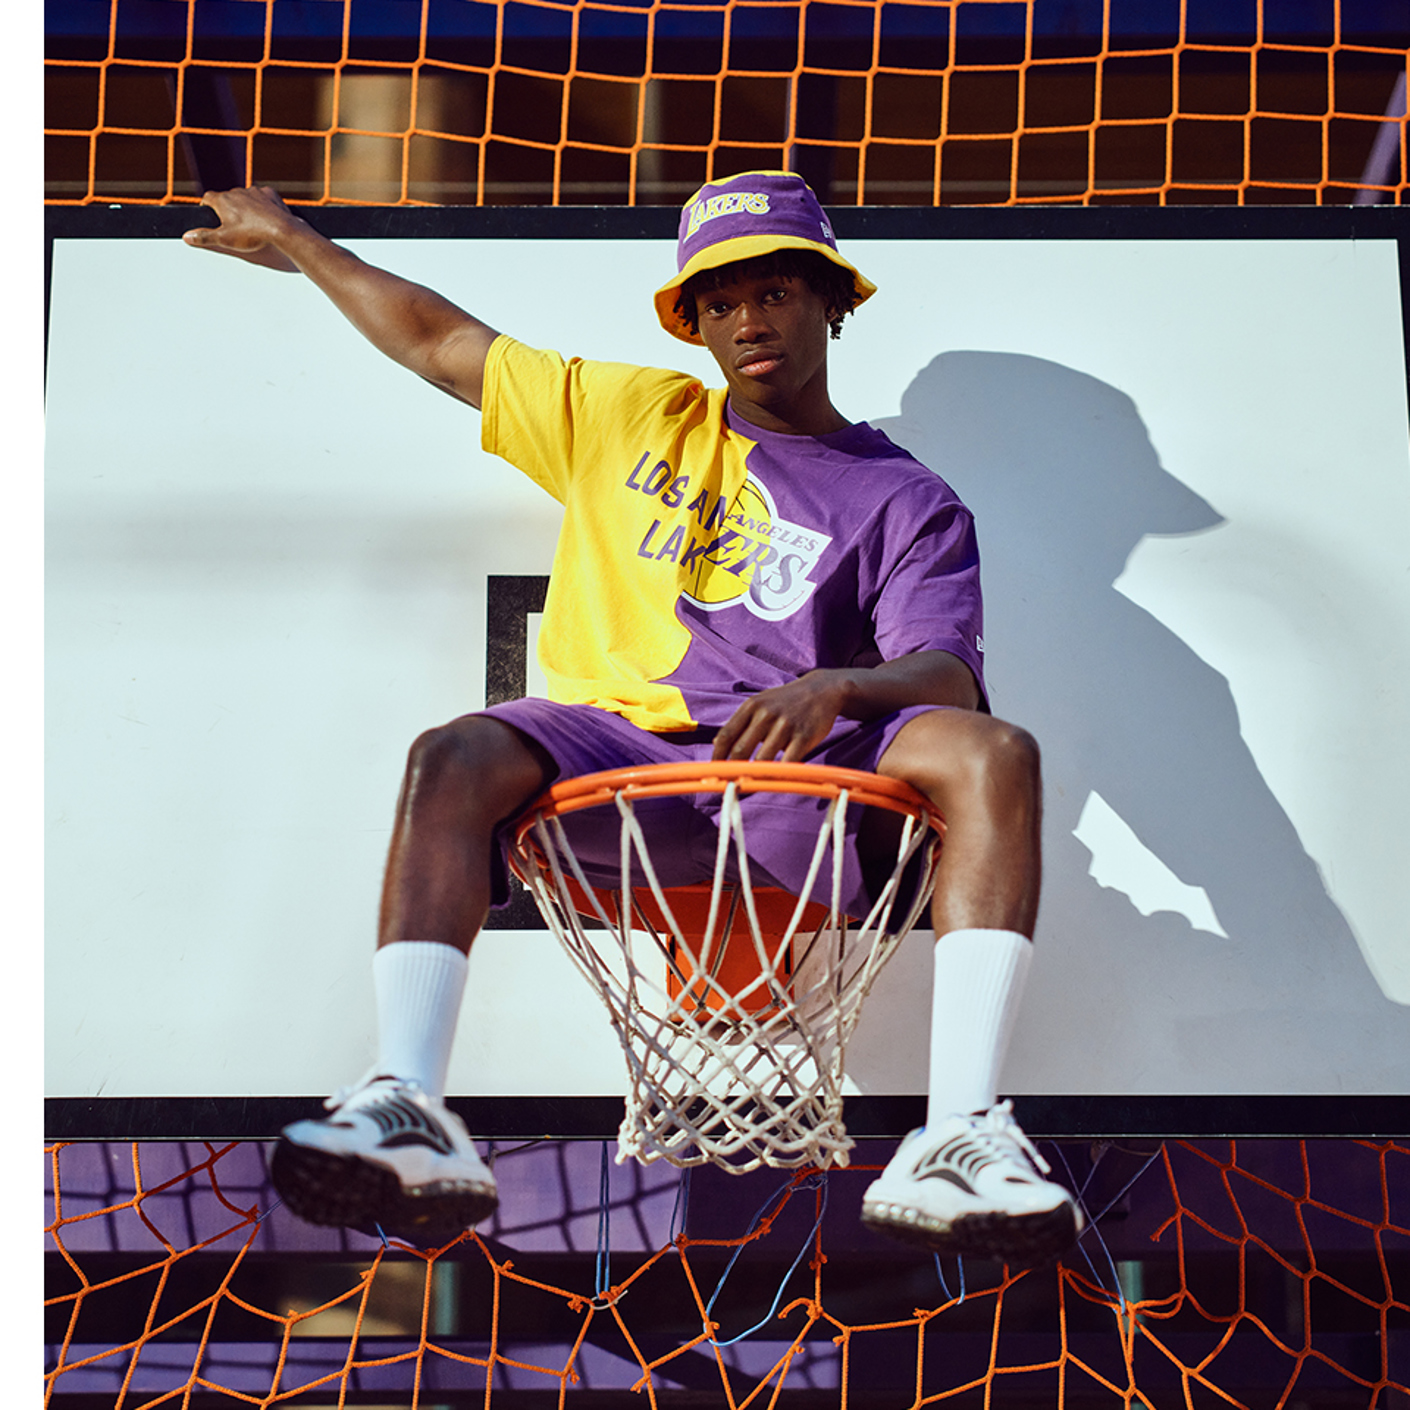 chico en la red de baloncesto con NBA Fadeaway New Era sombreros de verano y colección de ropa